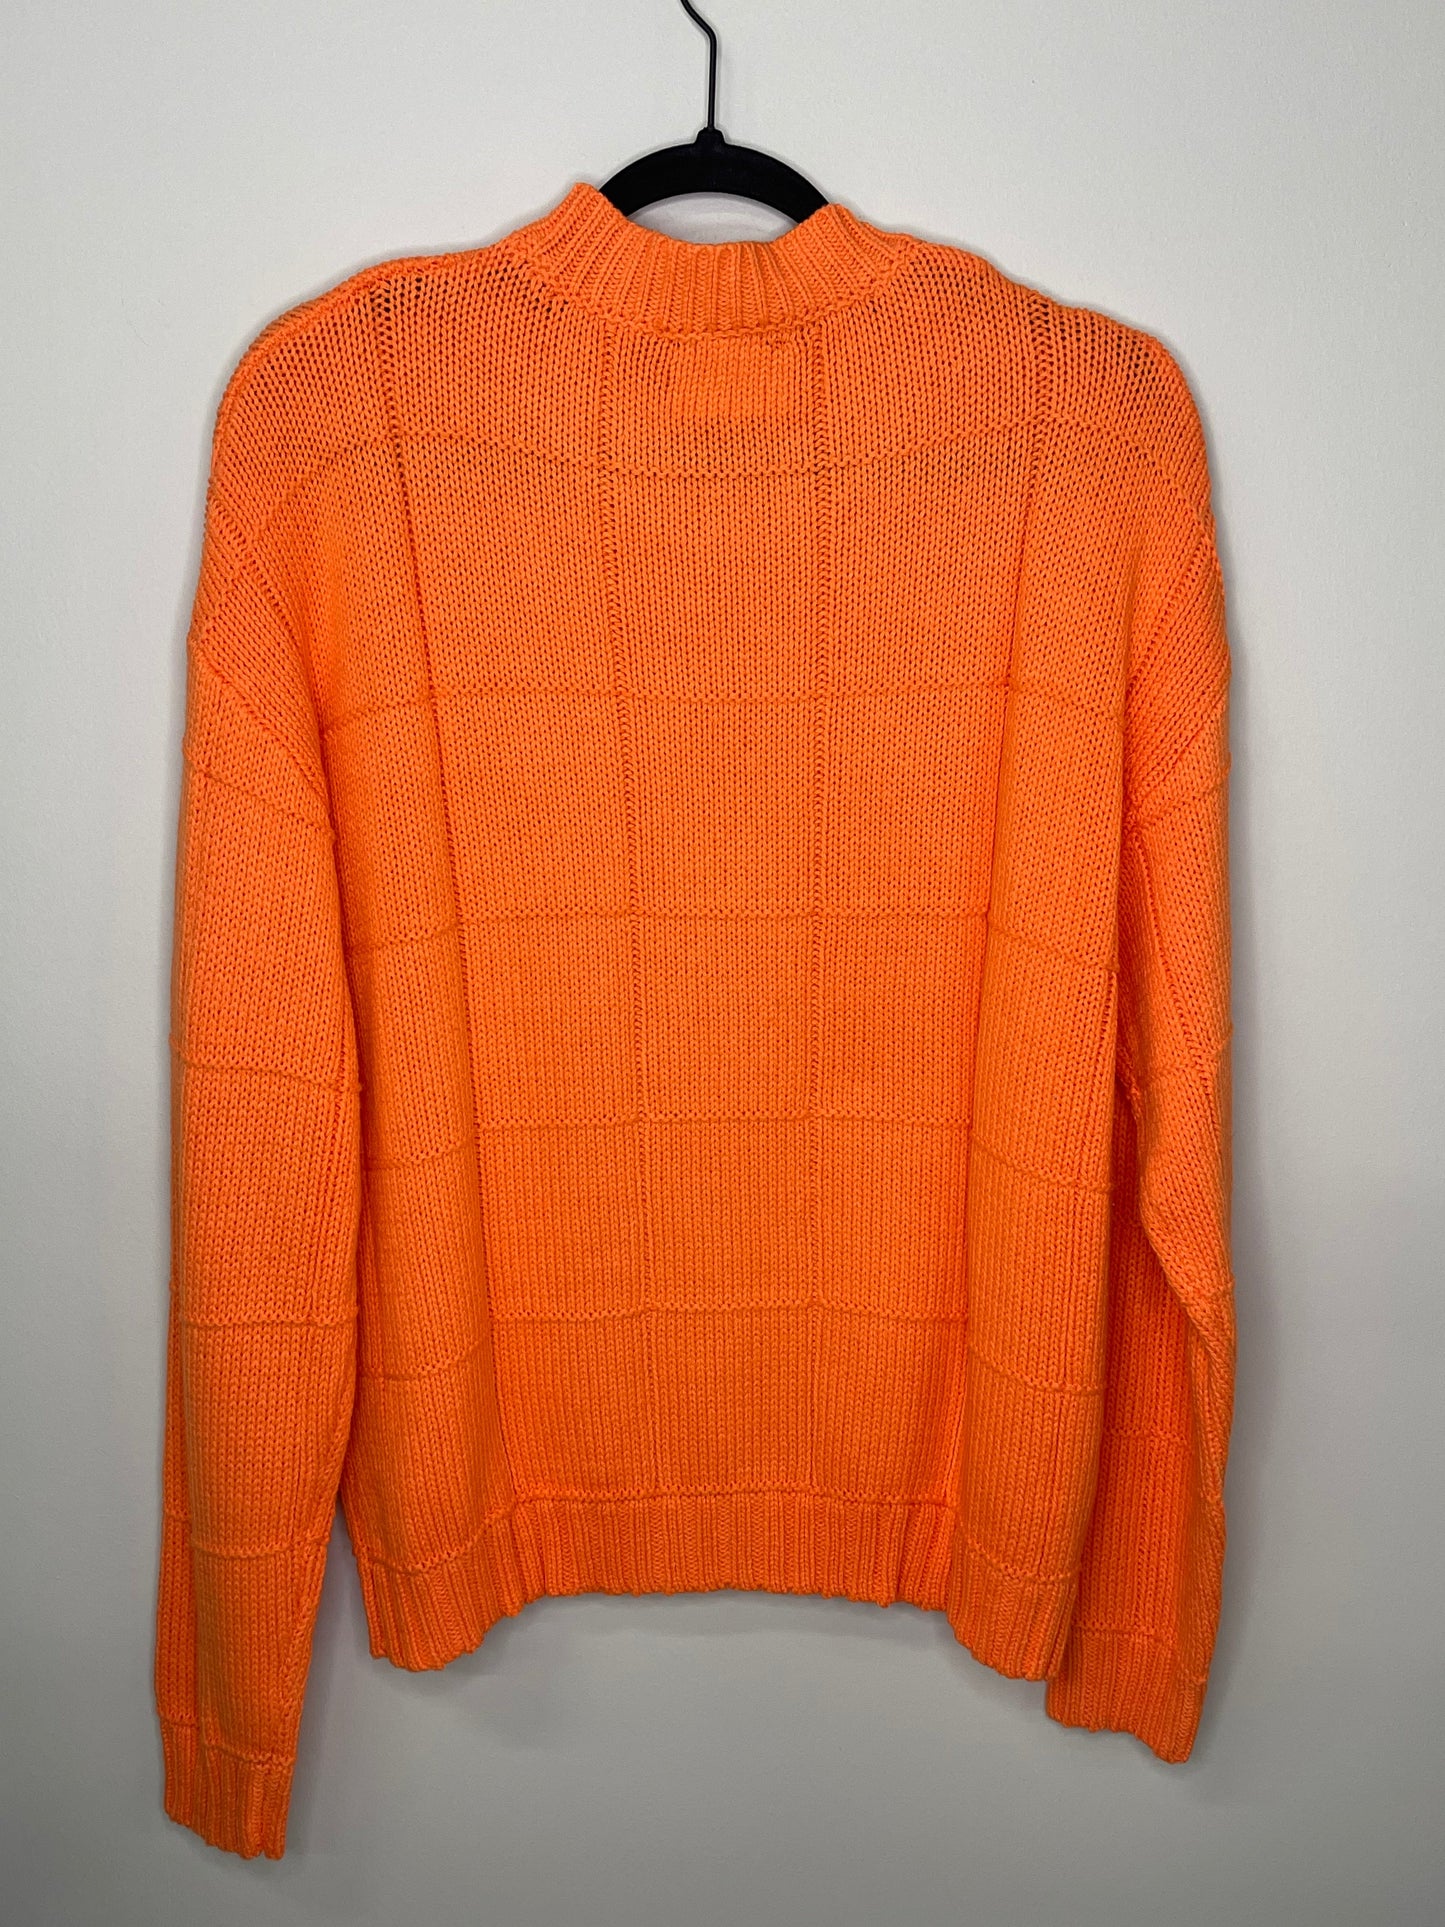 Sweater, Diamond Stitch Orange, LOVE Tiger